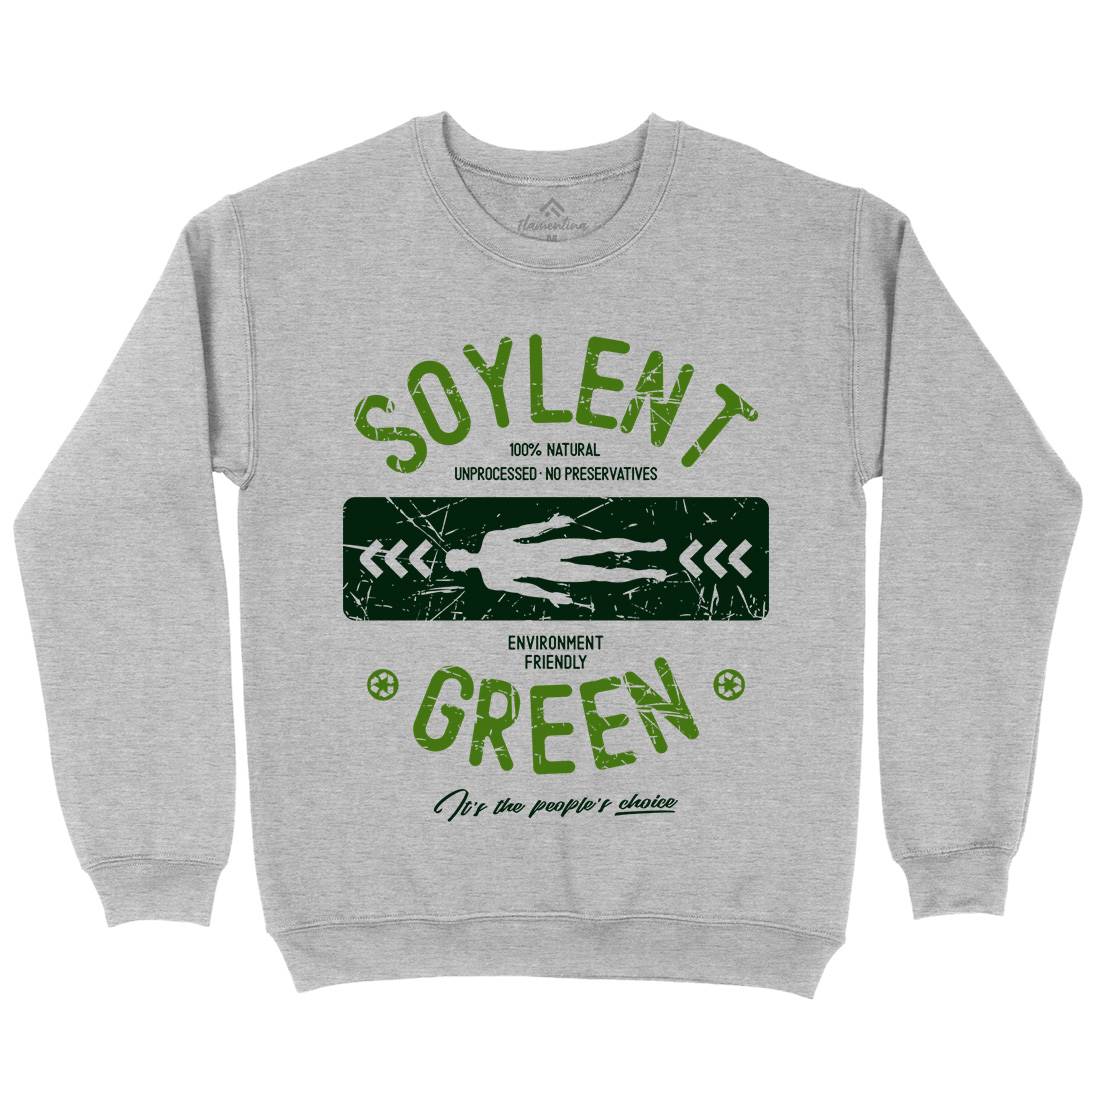 Soylent Green Kids Crew Neck Sweatshirt Horror D182